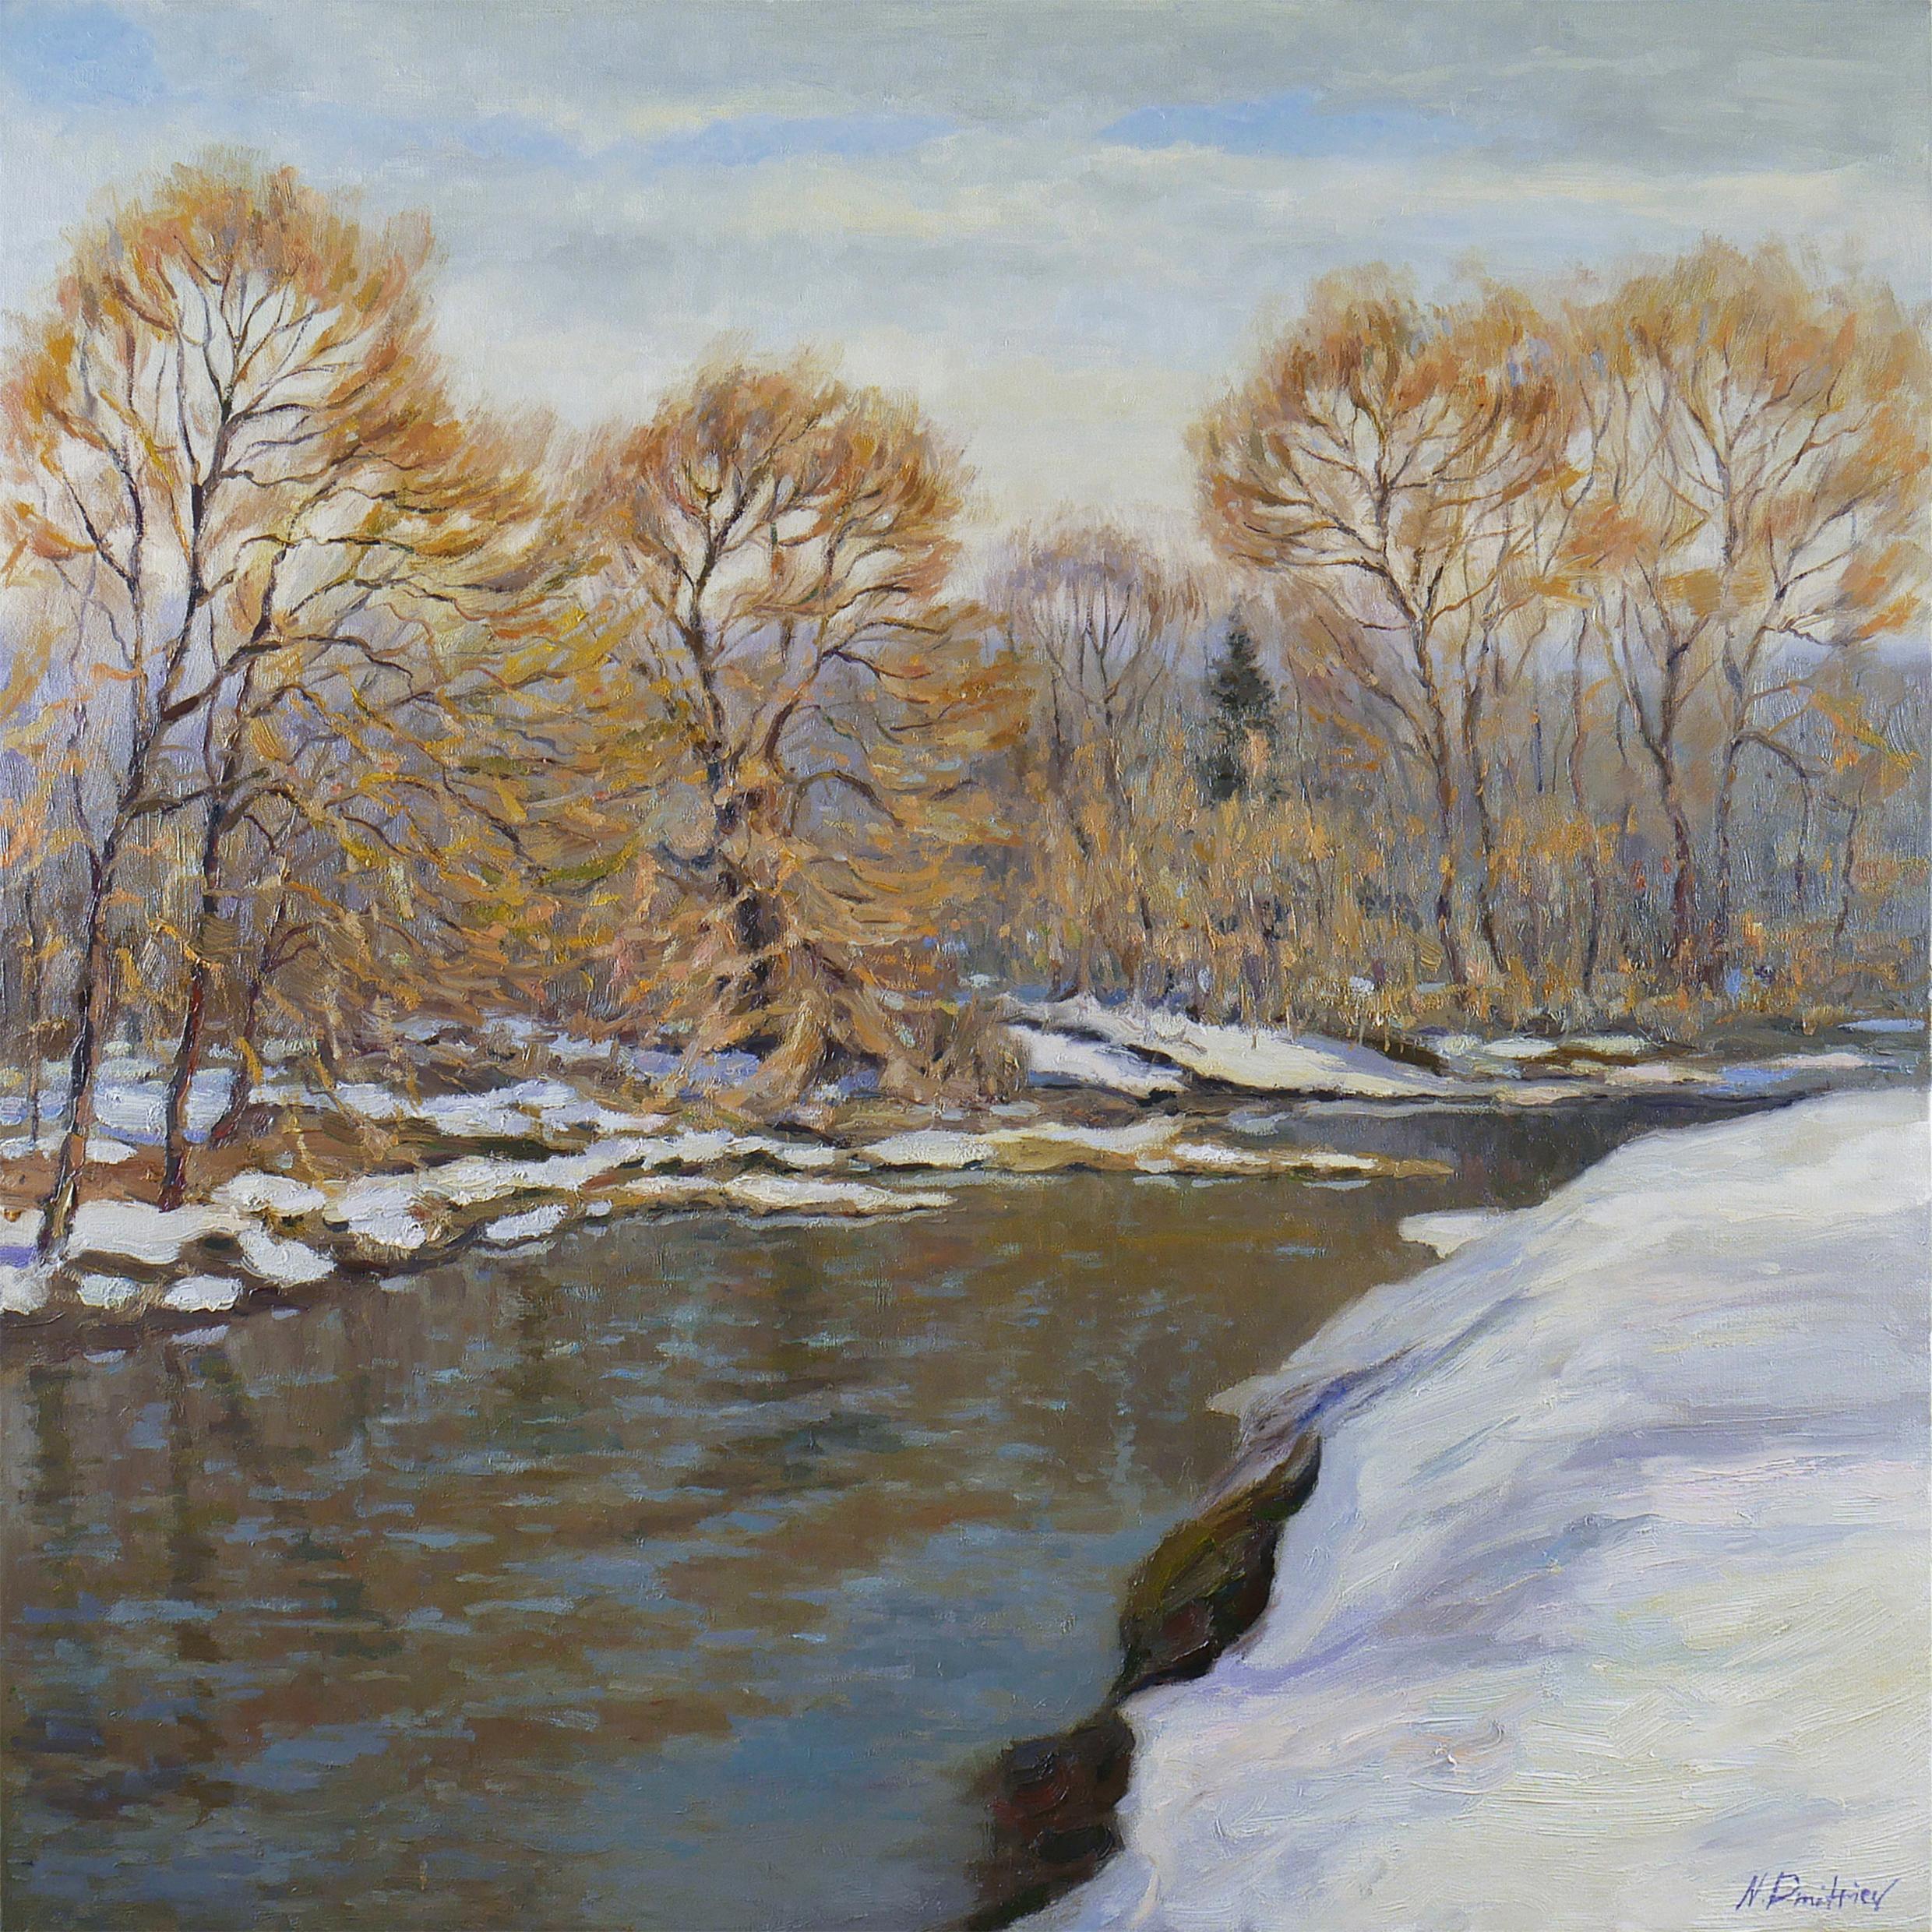 Landscape Painting Nikolay Dmitriev - La lumière du printemps - peinture de paysage fluvial